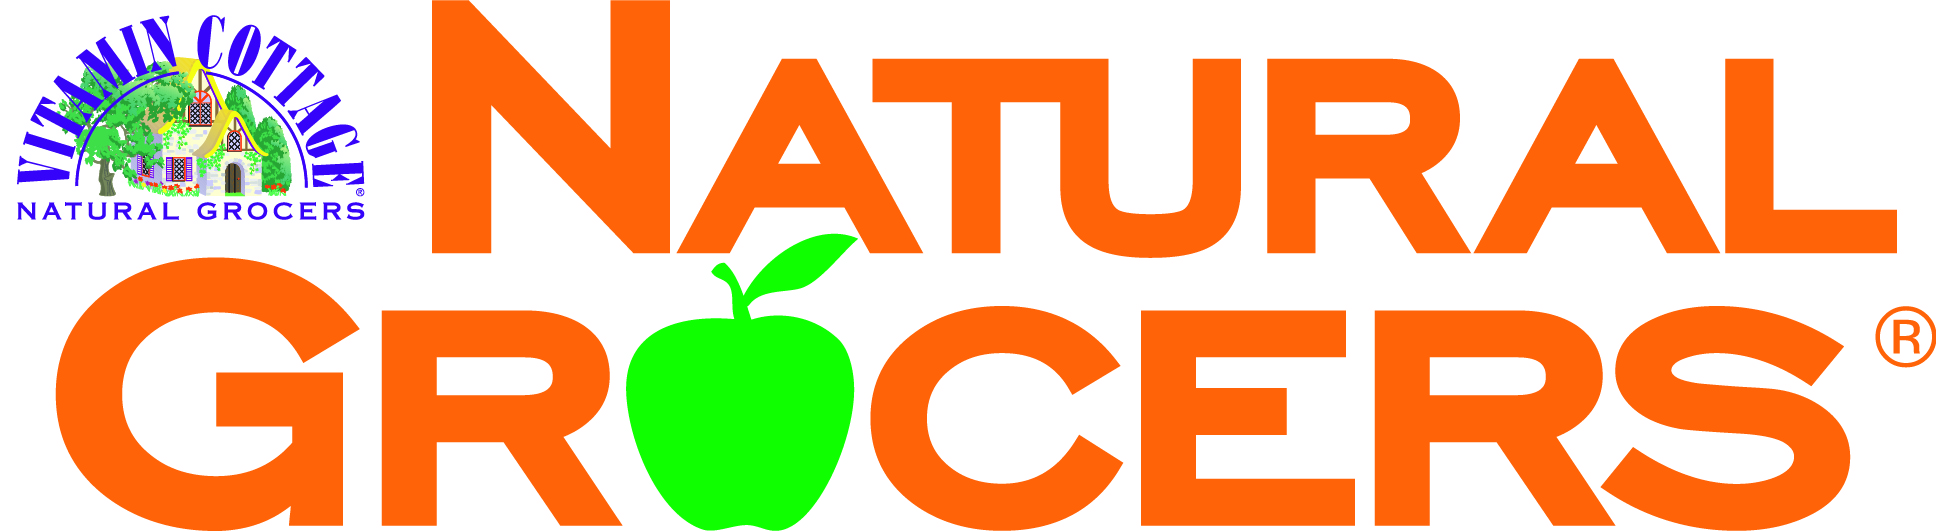 Vitamin Cottage Natural Grocers Logo